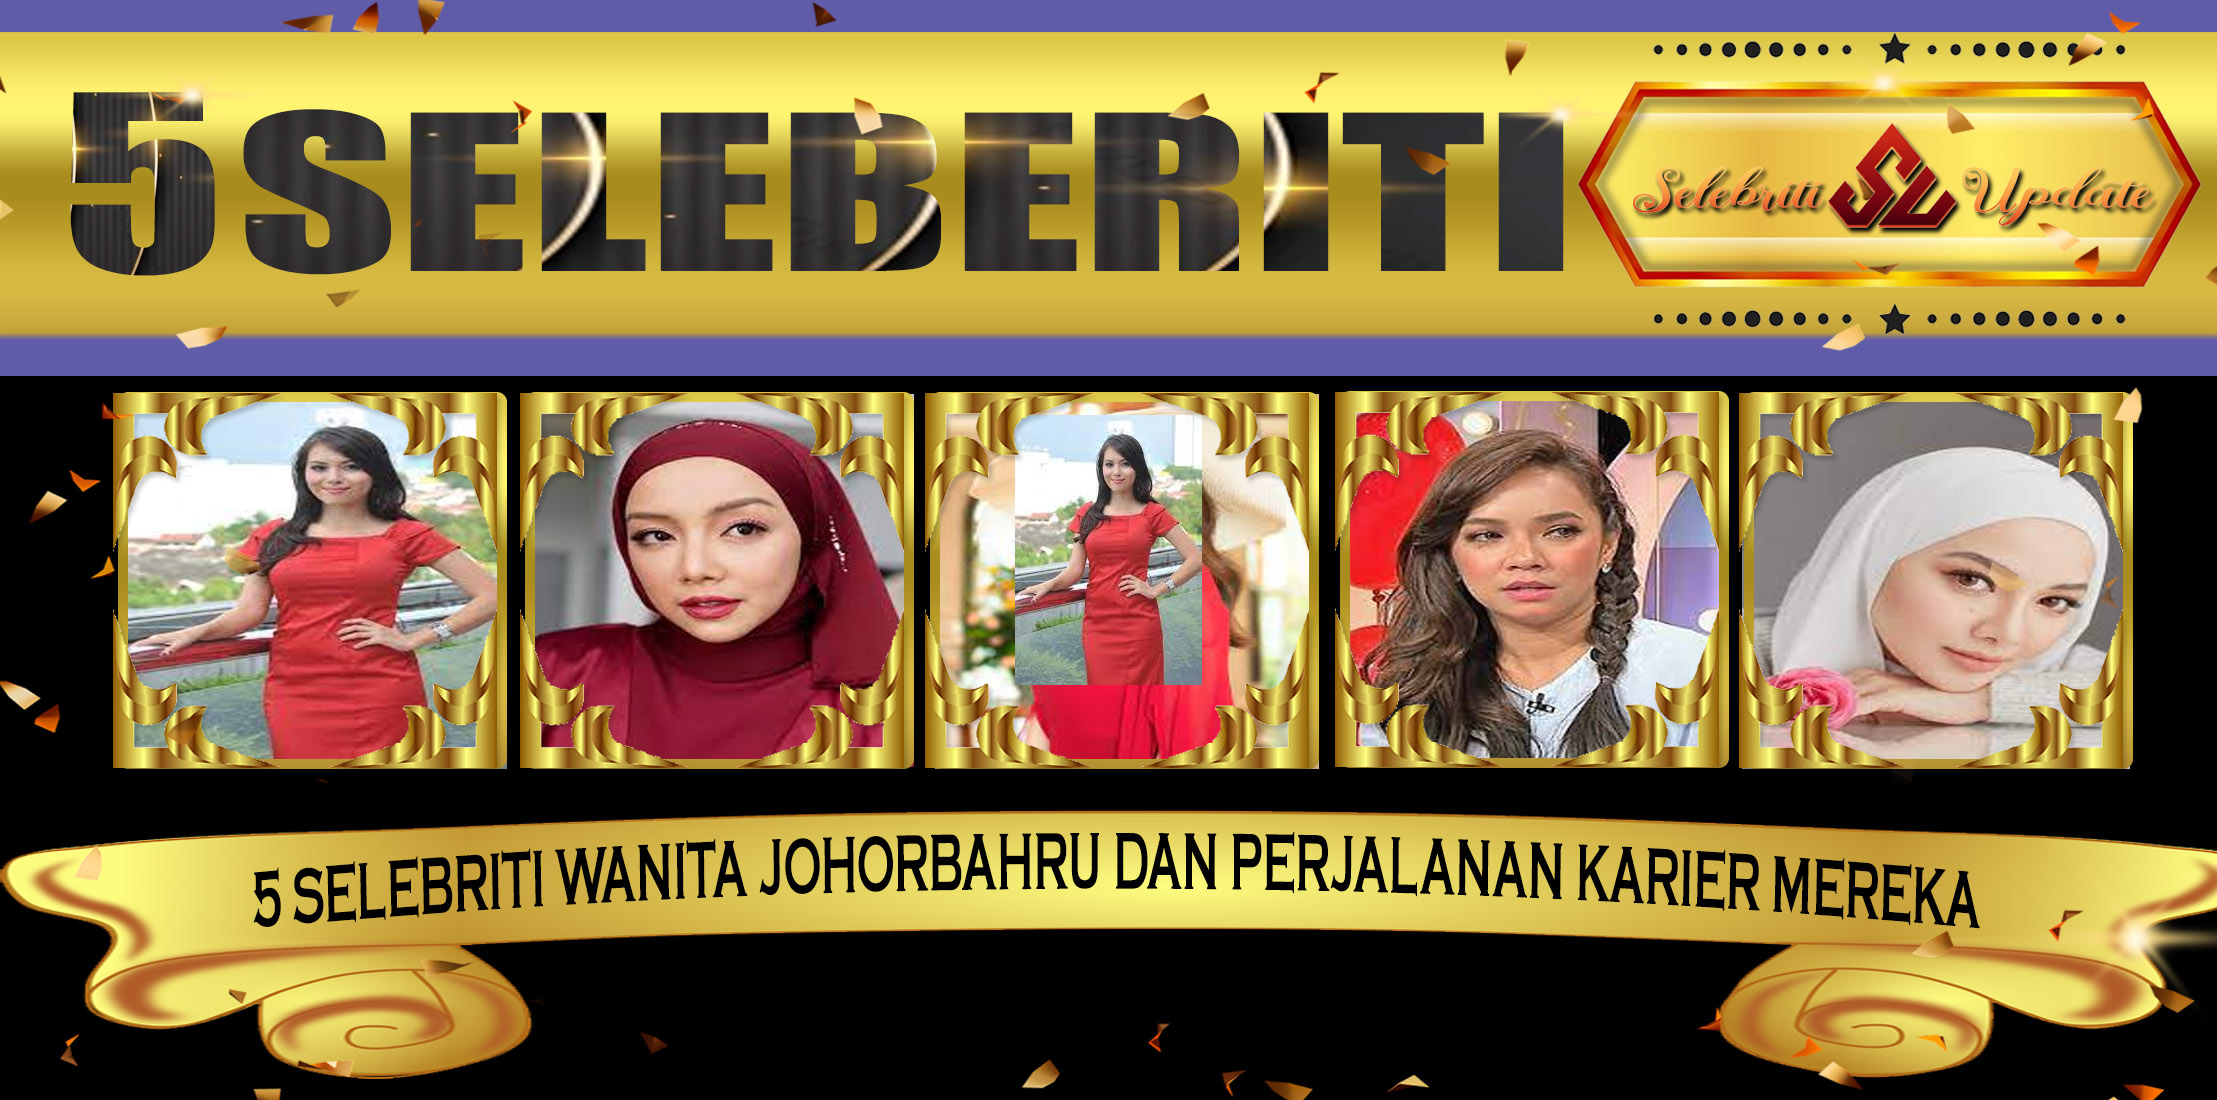 5 Selebriti Wanita JohorBahru dan Perjalanan Karier Mereka